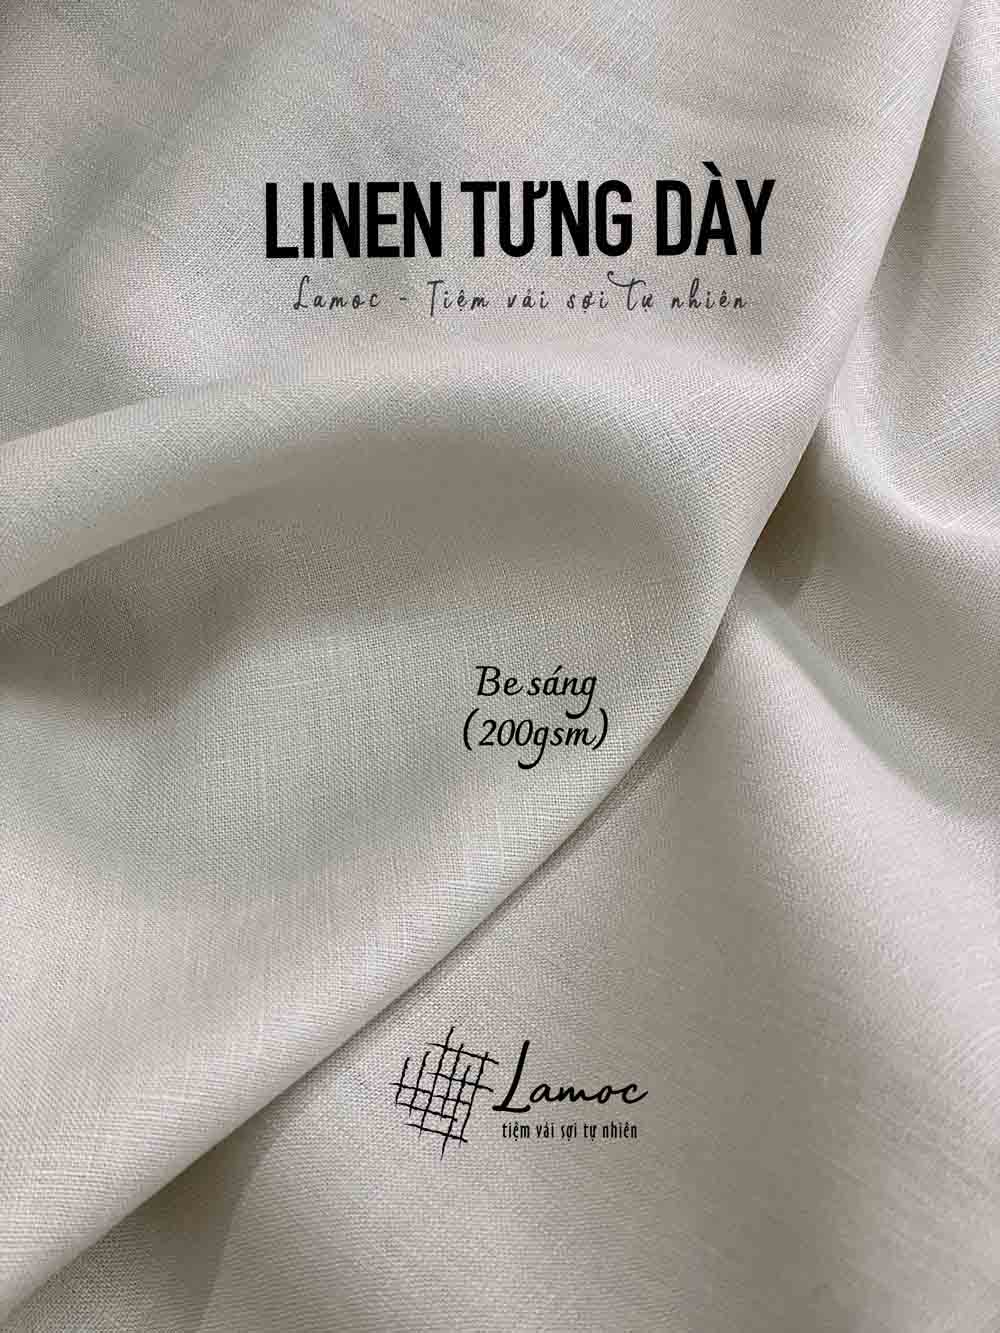 Linen Tưng Premium dư hãng giá rẻ